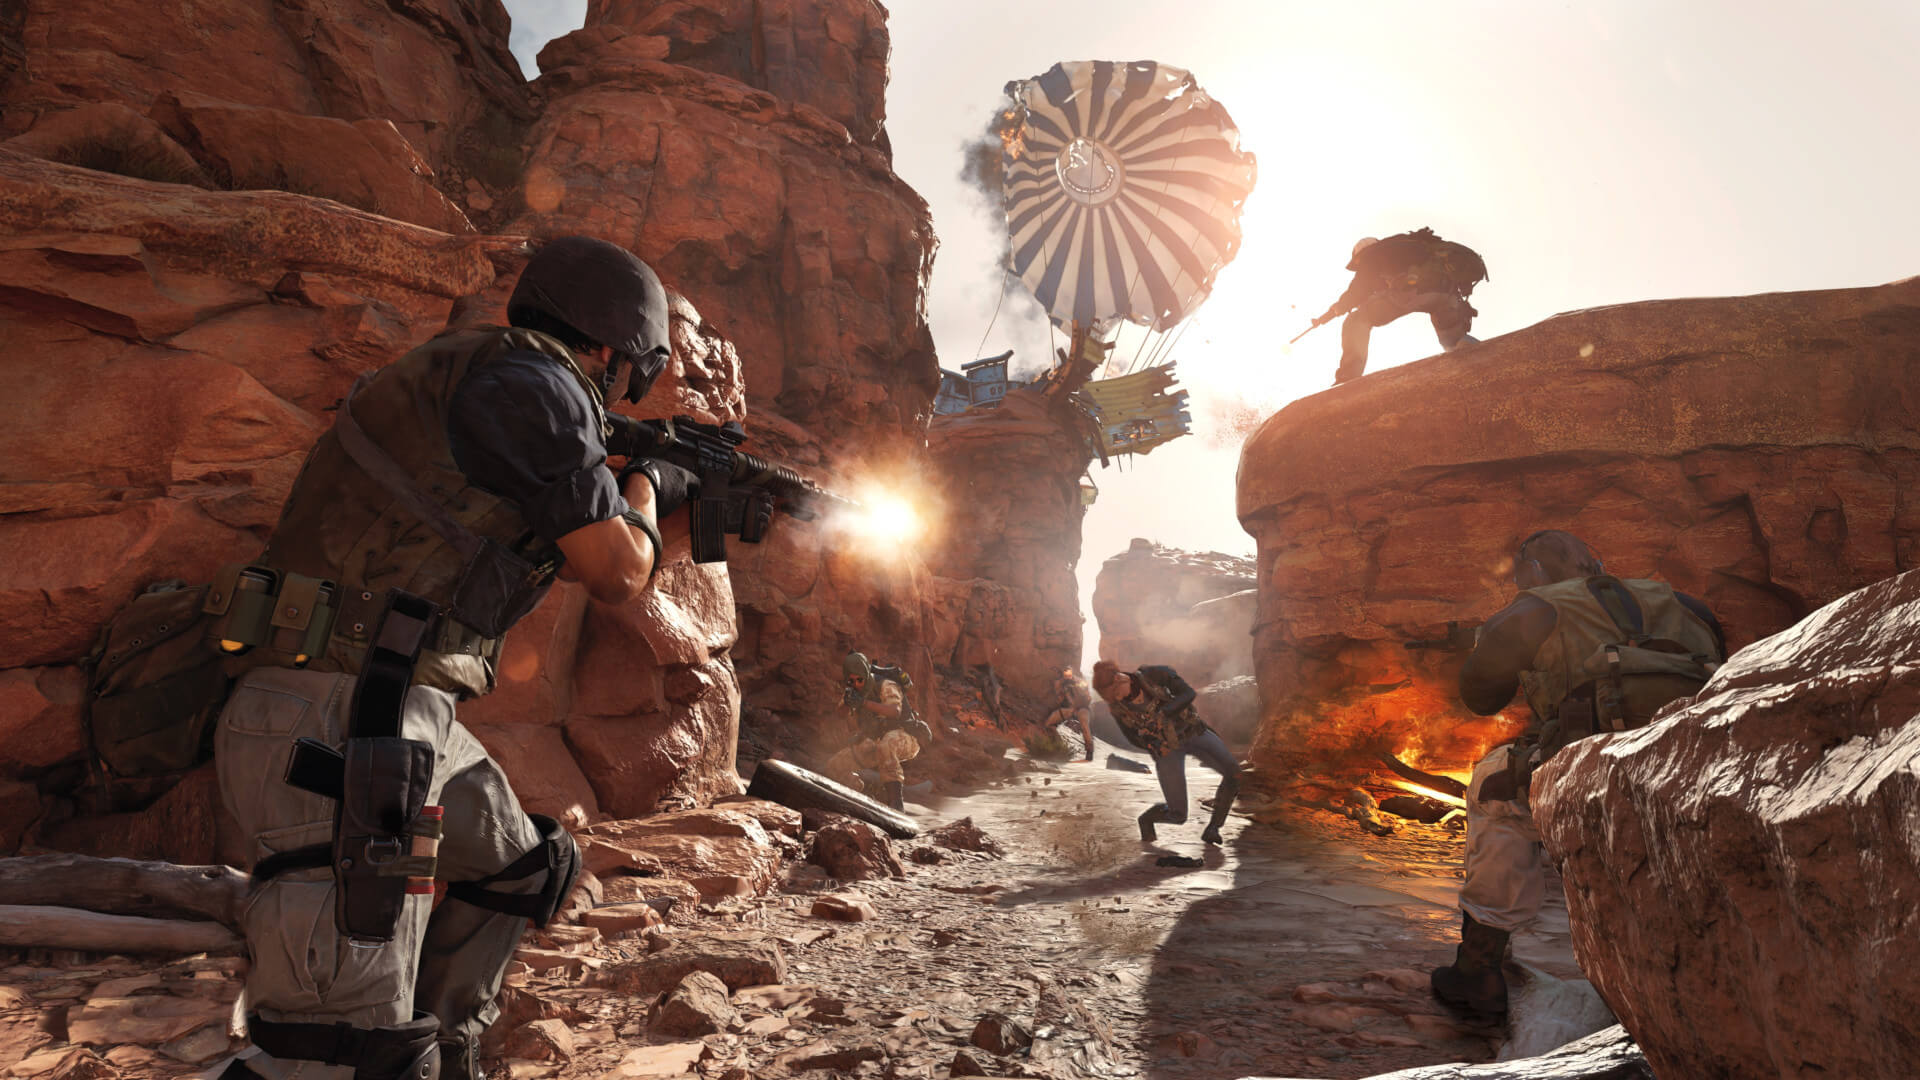 Raven Software'in Call of Duty: Black Ops Cold War oyununda yoğun bir silahlı çatışma yaşanıyor